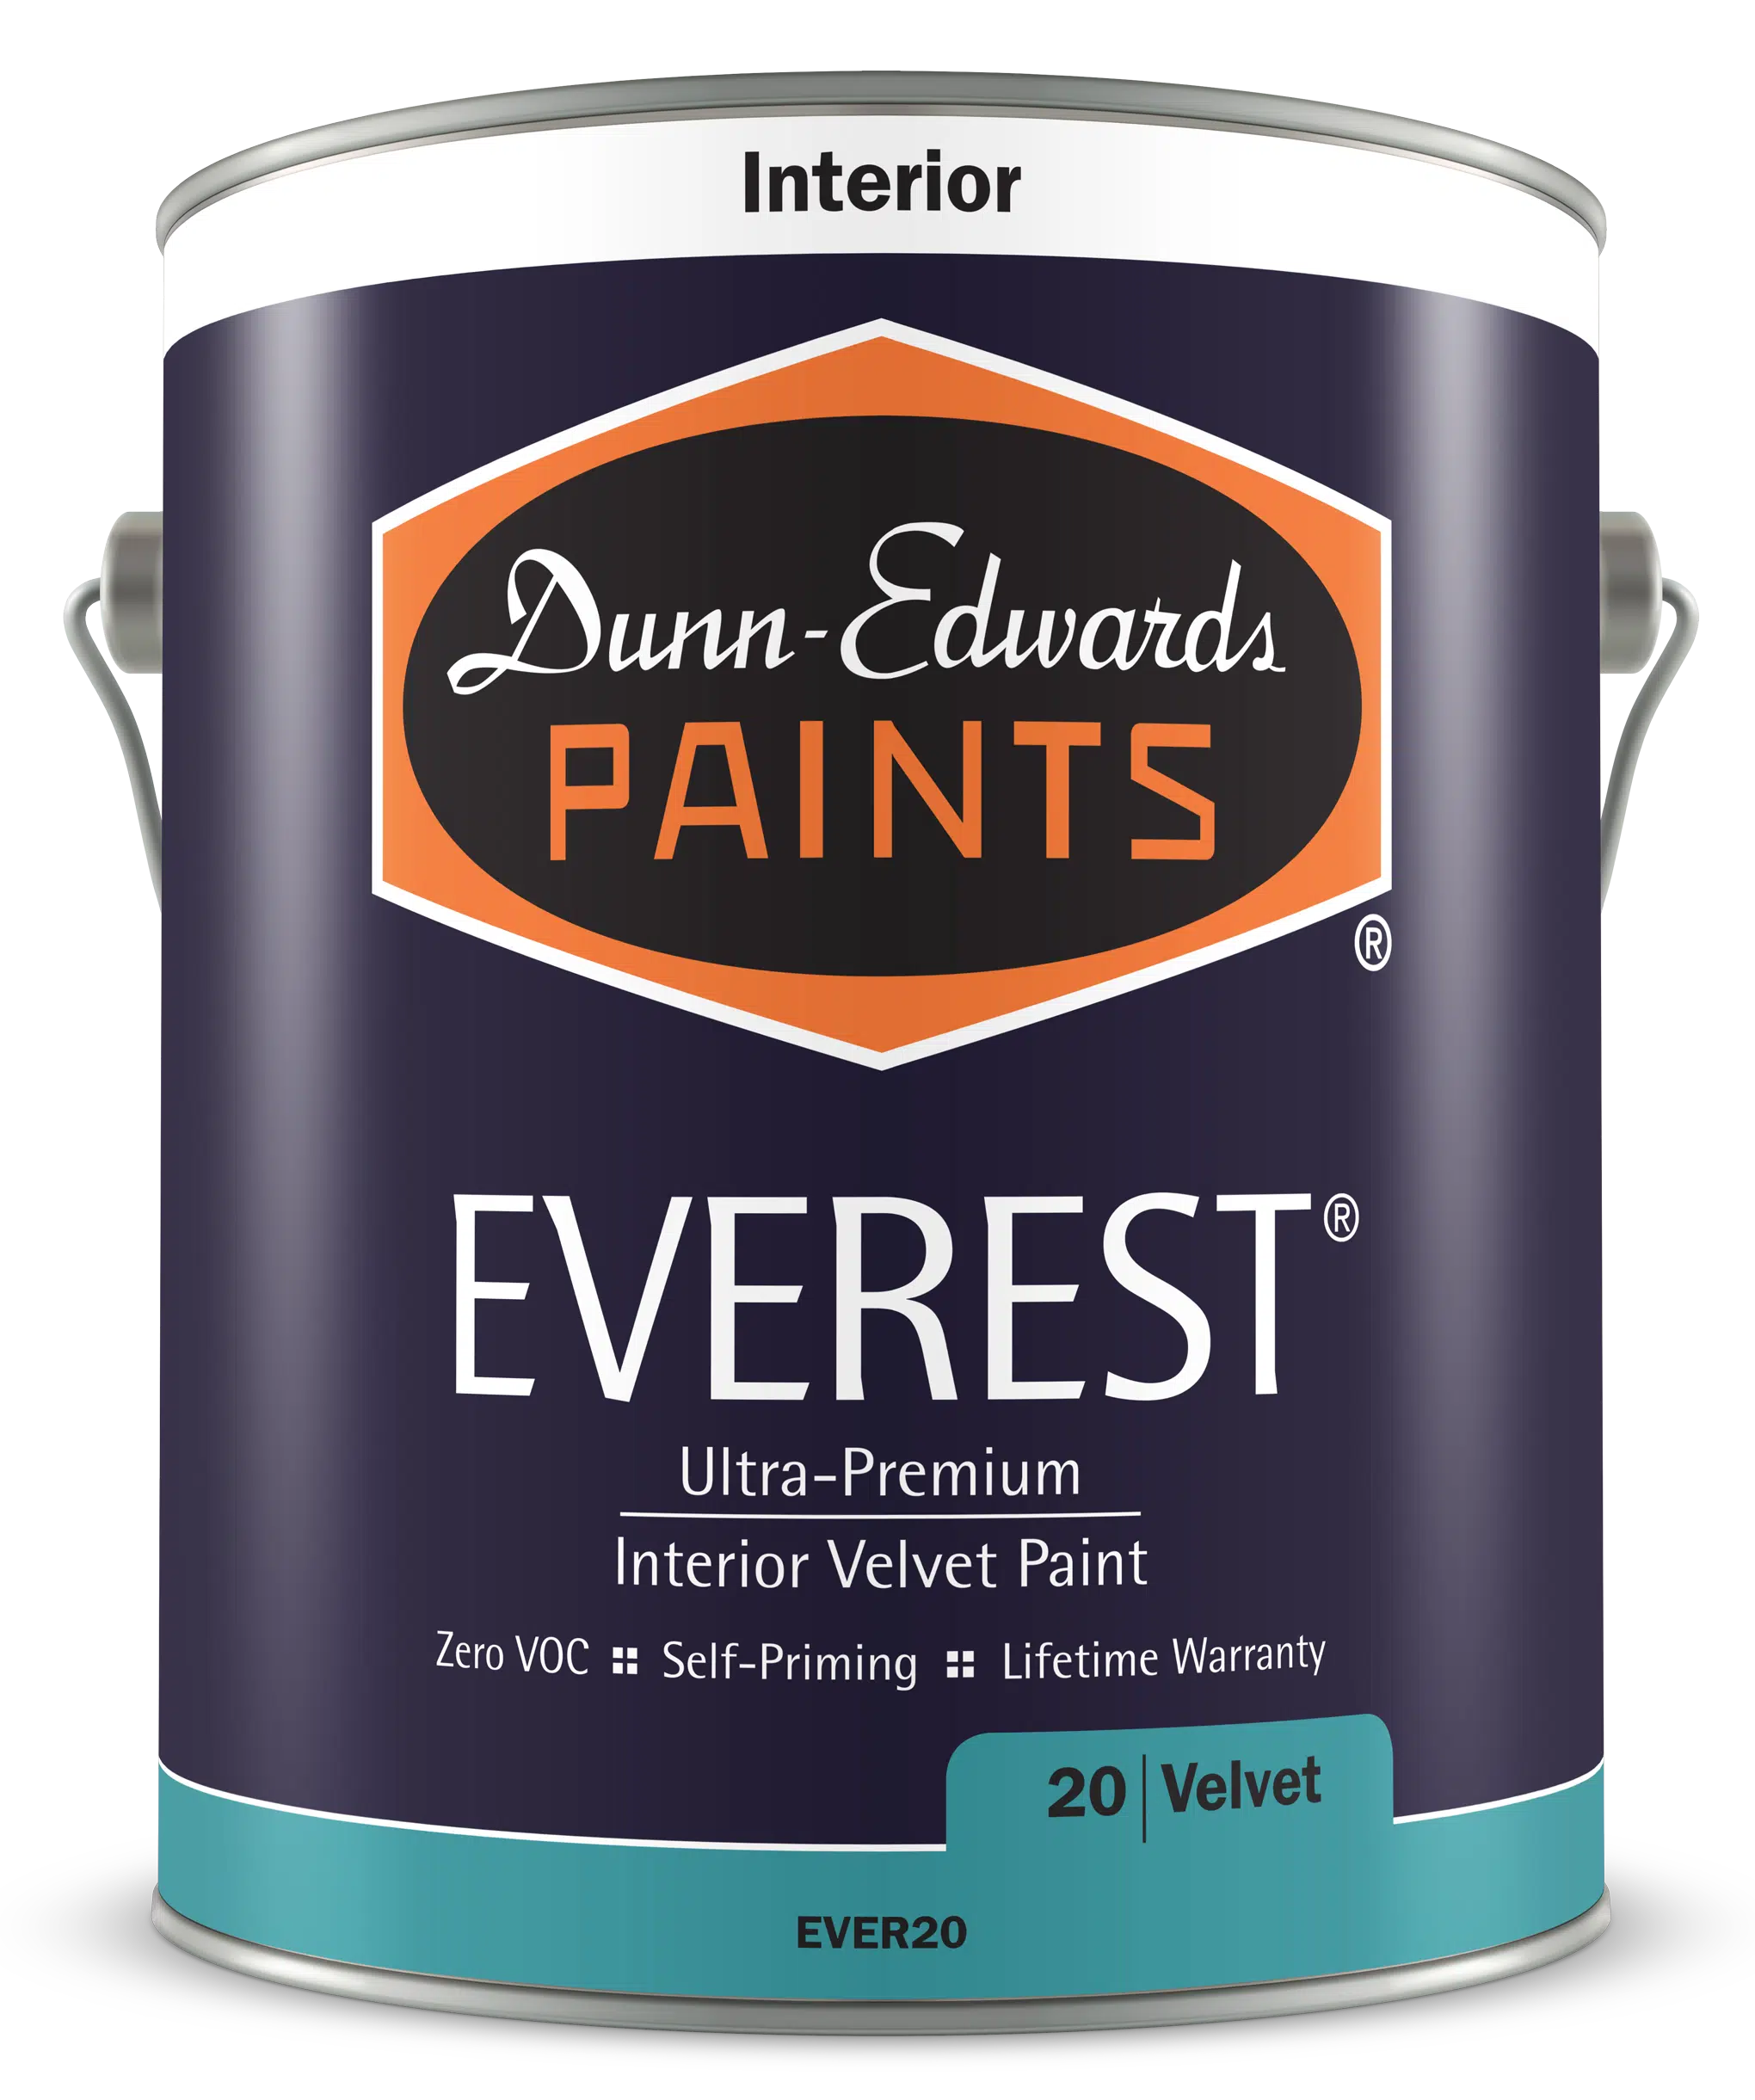 EVEREST Interior Velvet Paint Can